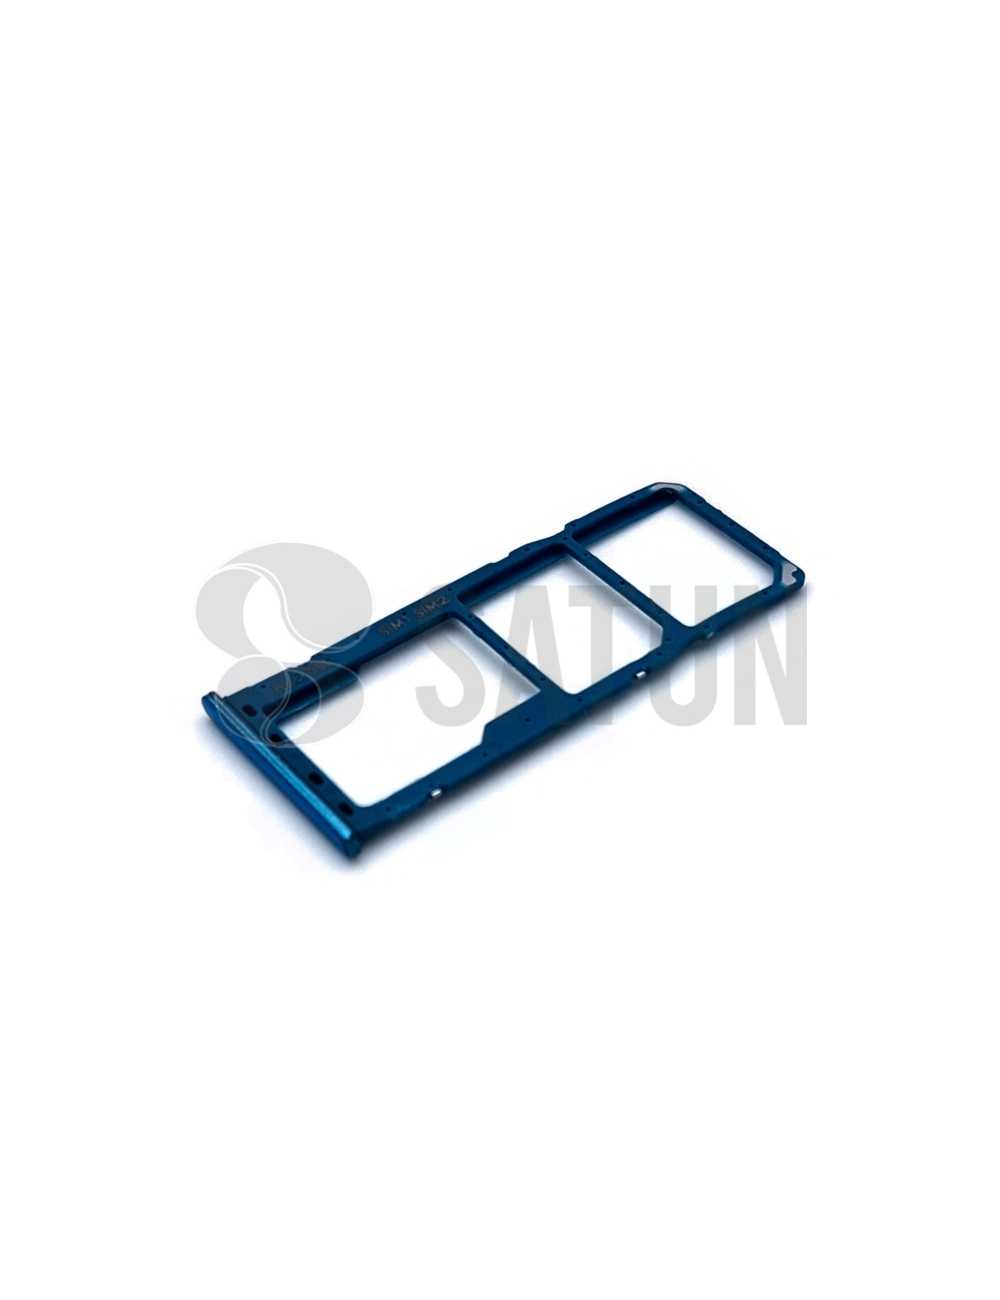 Bandeja Dual SIM y microSD Samsung Galaxy A50 azul